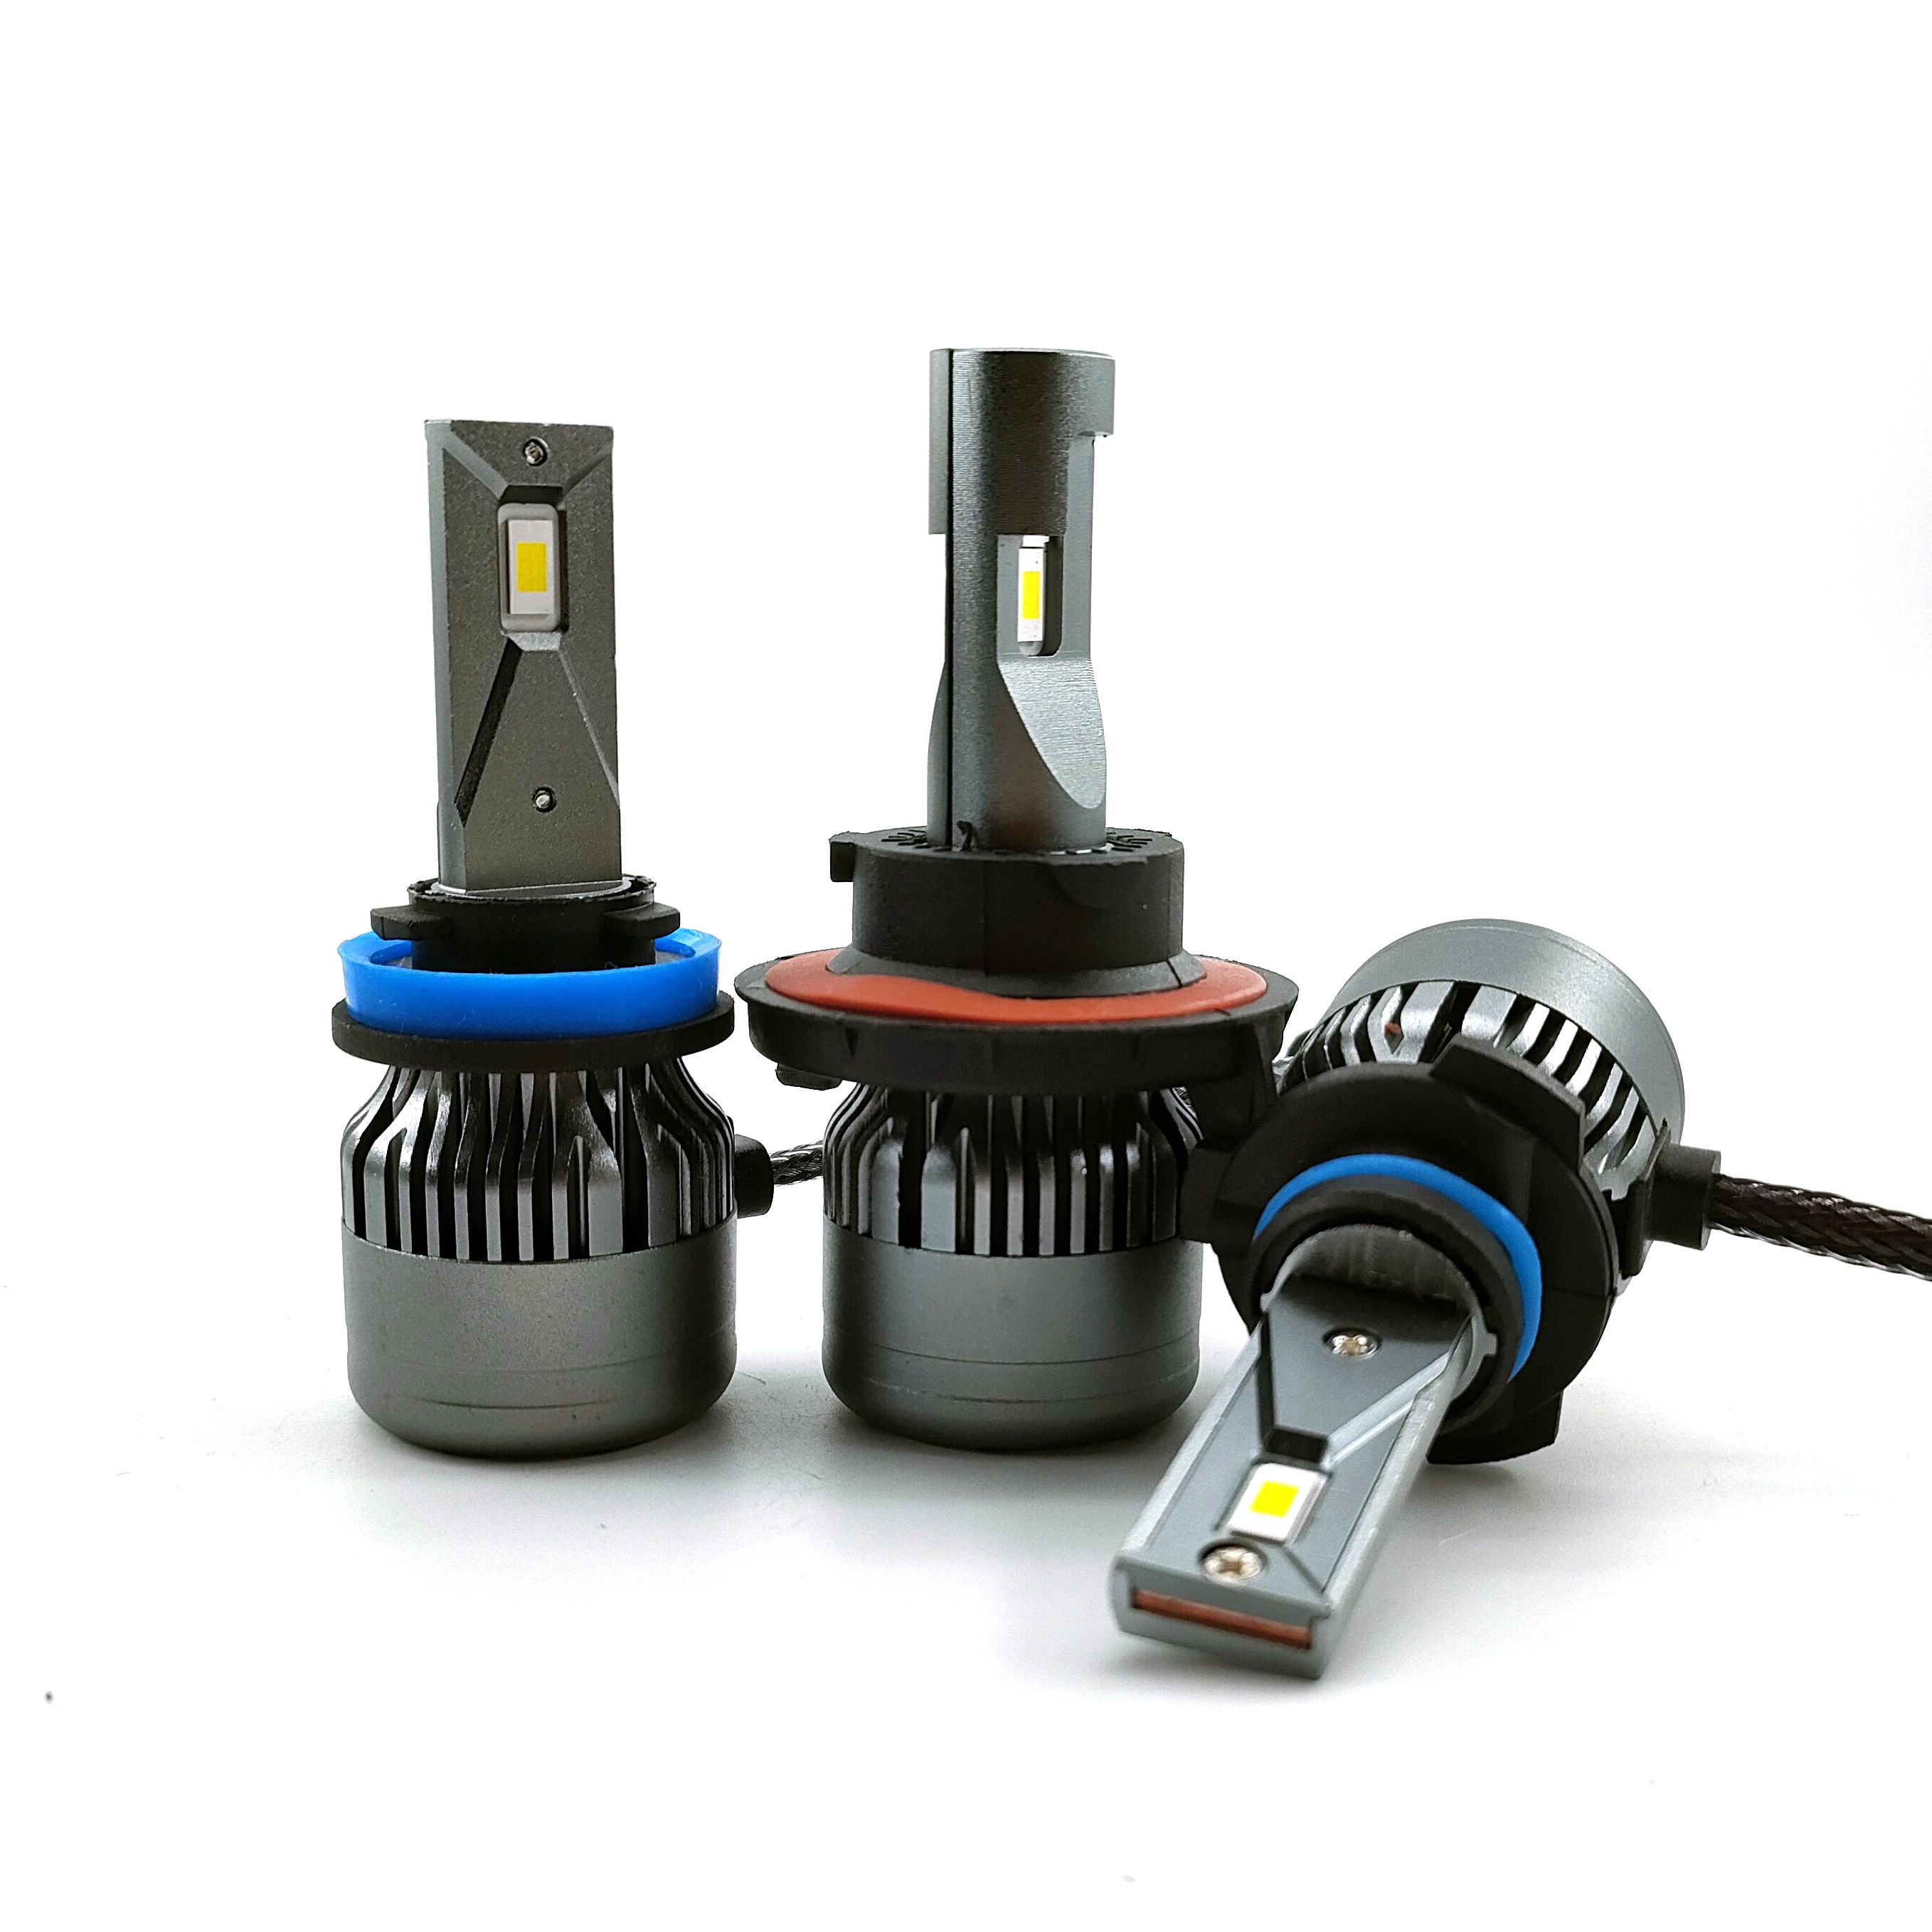 

Cheap led auto headlight bulb csp 6000k 8000k car light h4 h7 h11 h13 9005 v20 automotive led headlight kits